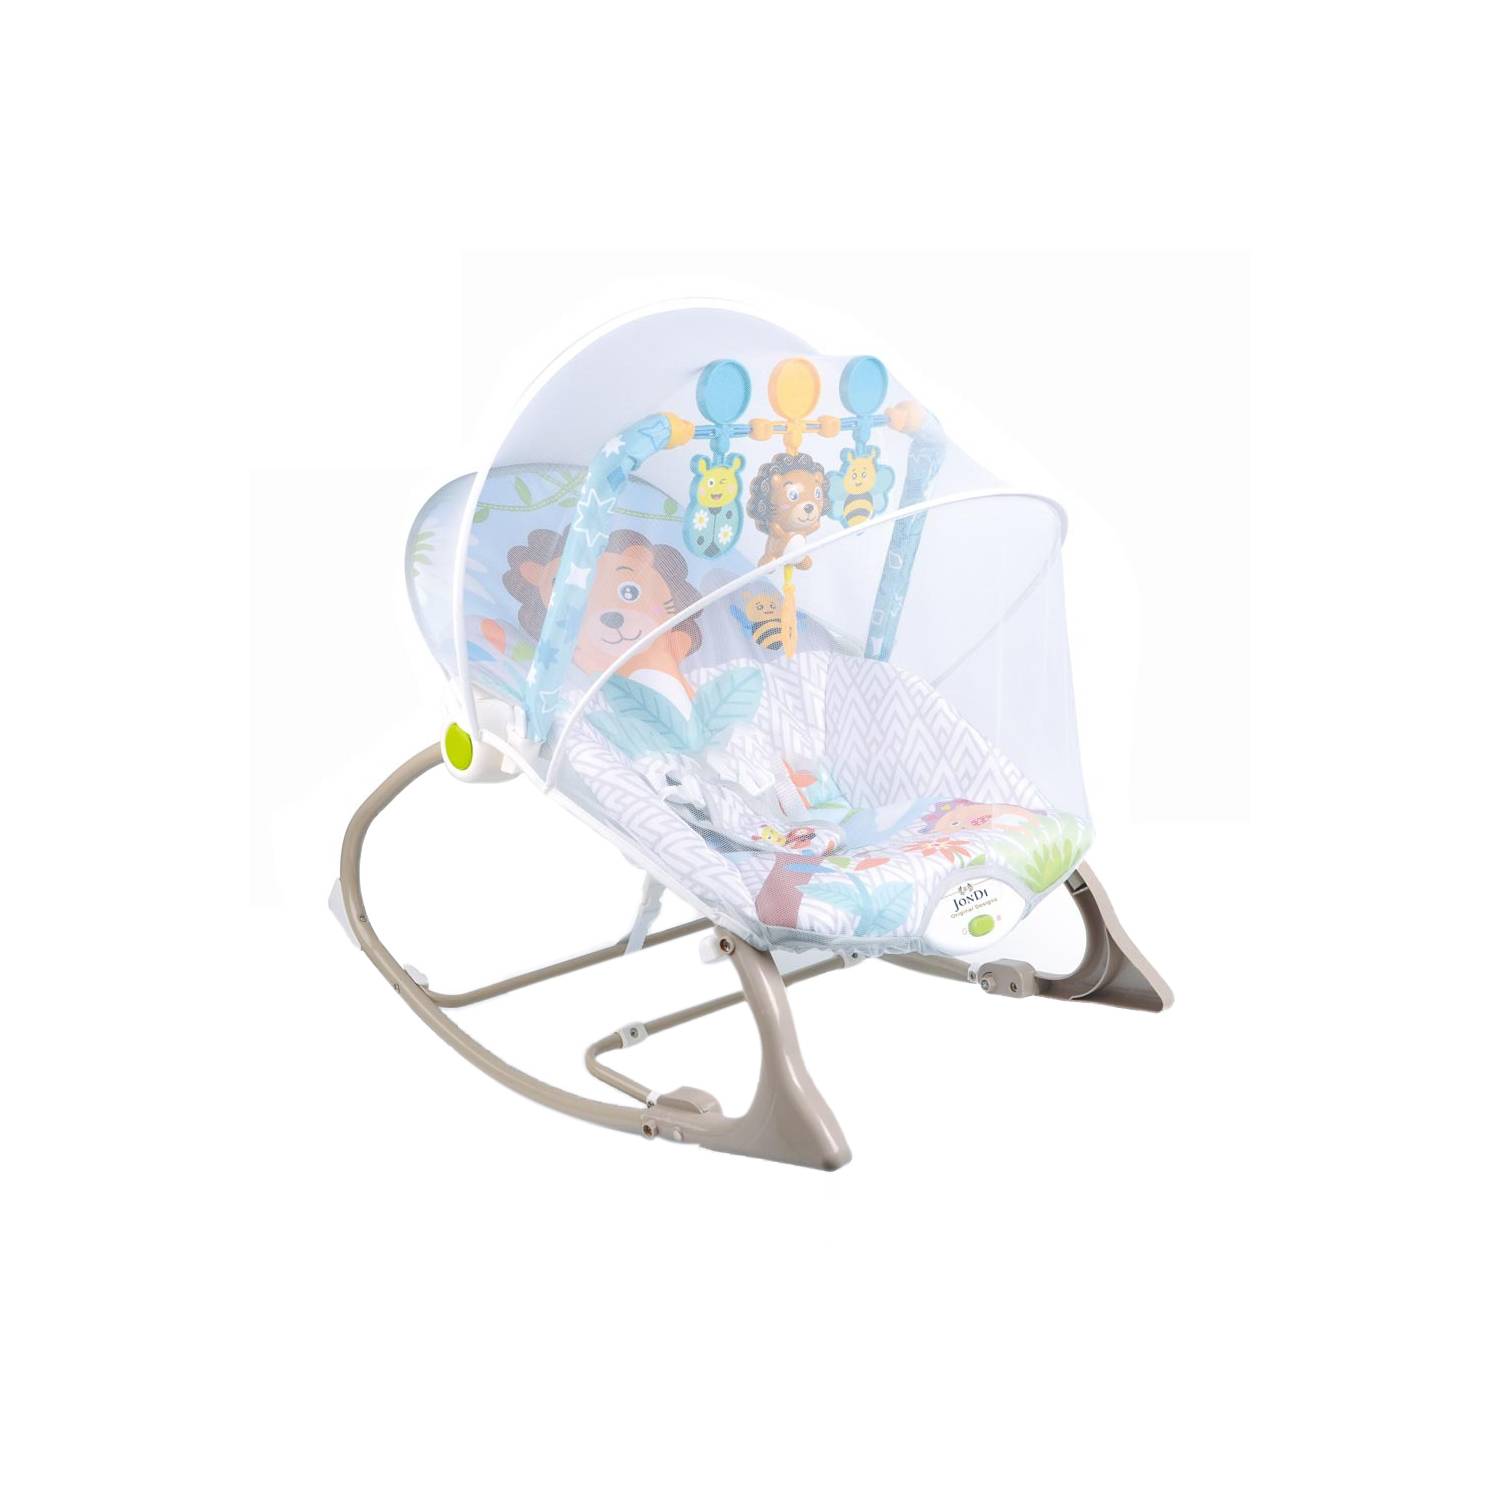 Silla mecedora para bebé SunBaby con vibración SUNBABY